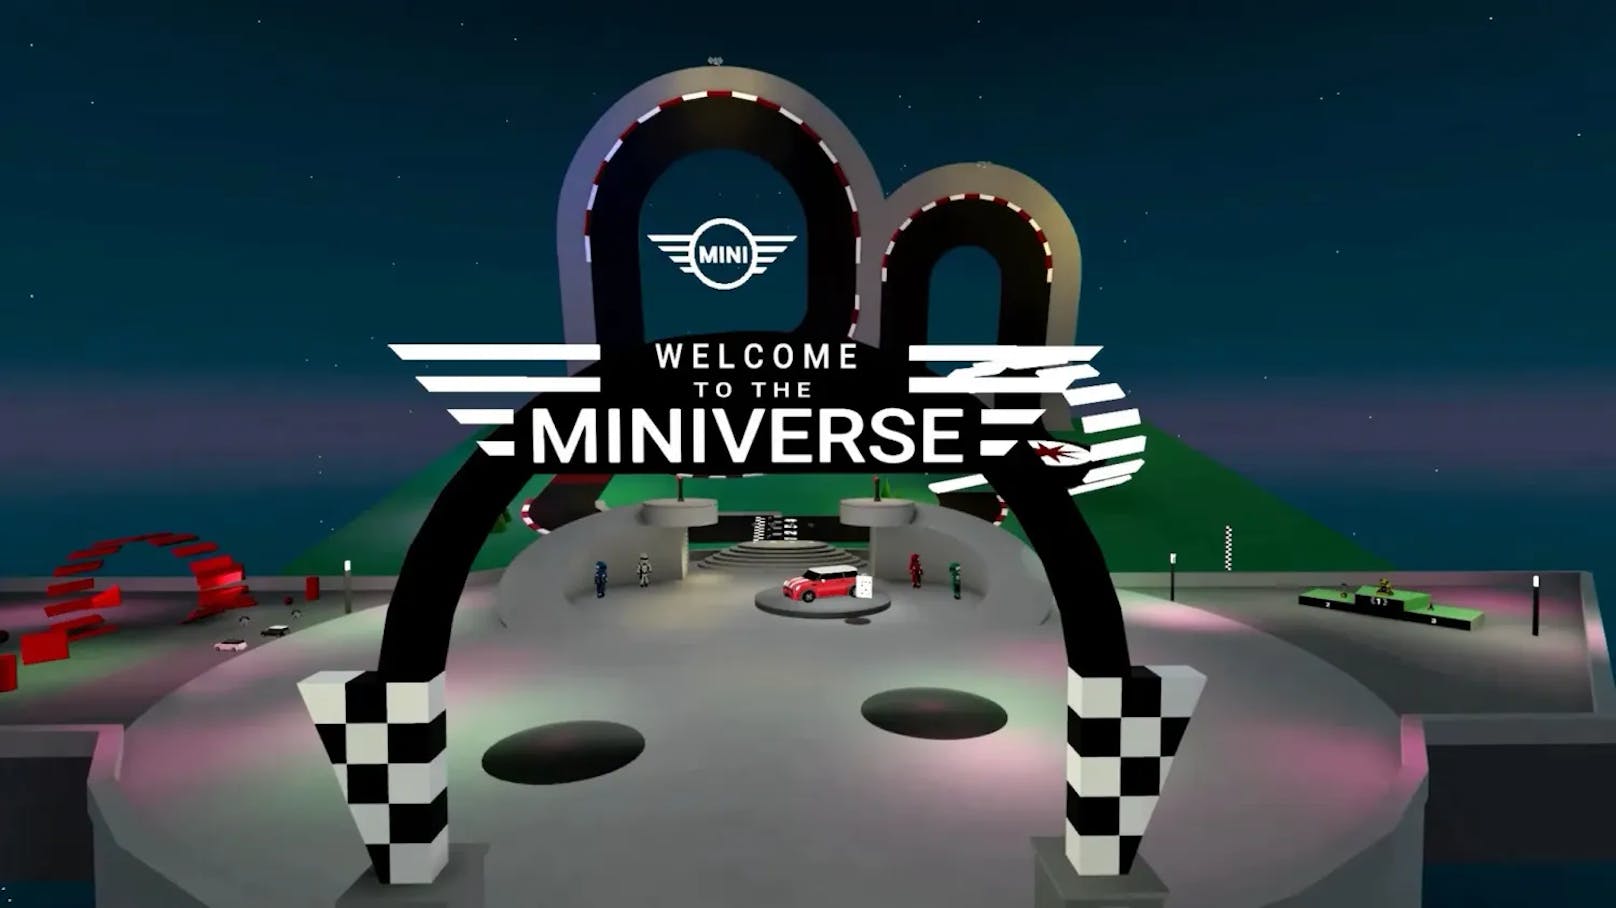 Spiel und Spaß bietet das Miniverse – dort lassen sich nicht nur Minis testen, sondern auch Rennen fahren.